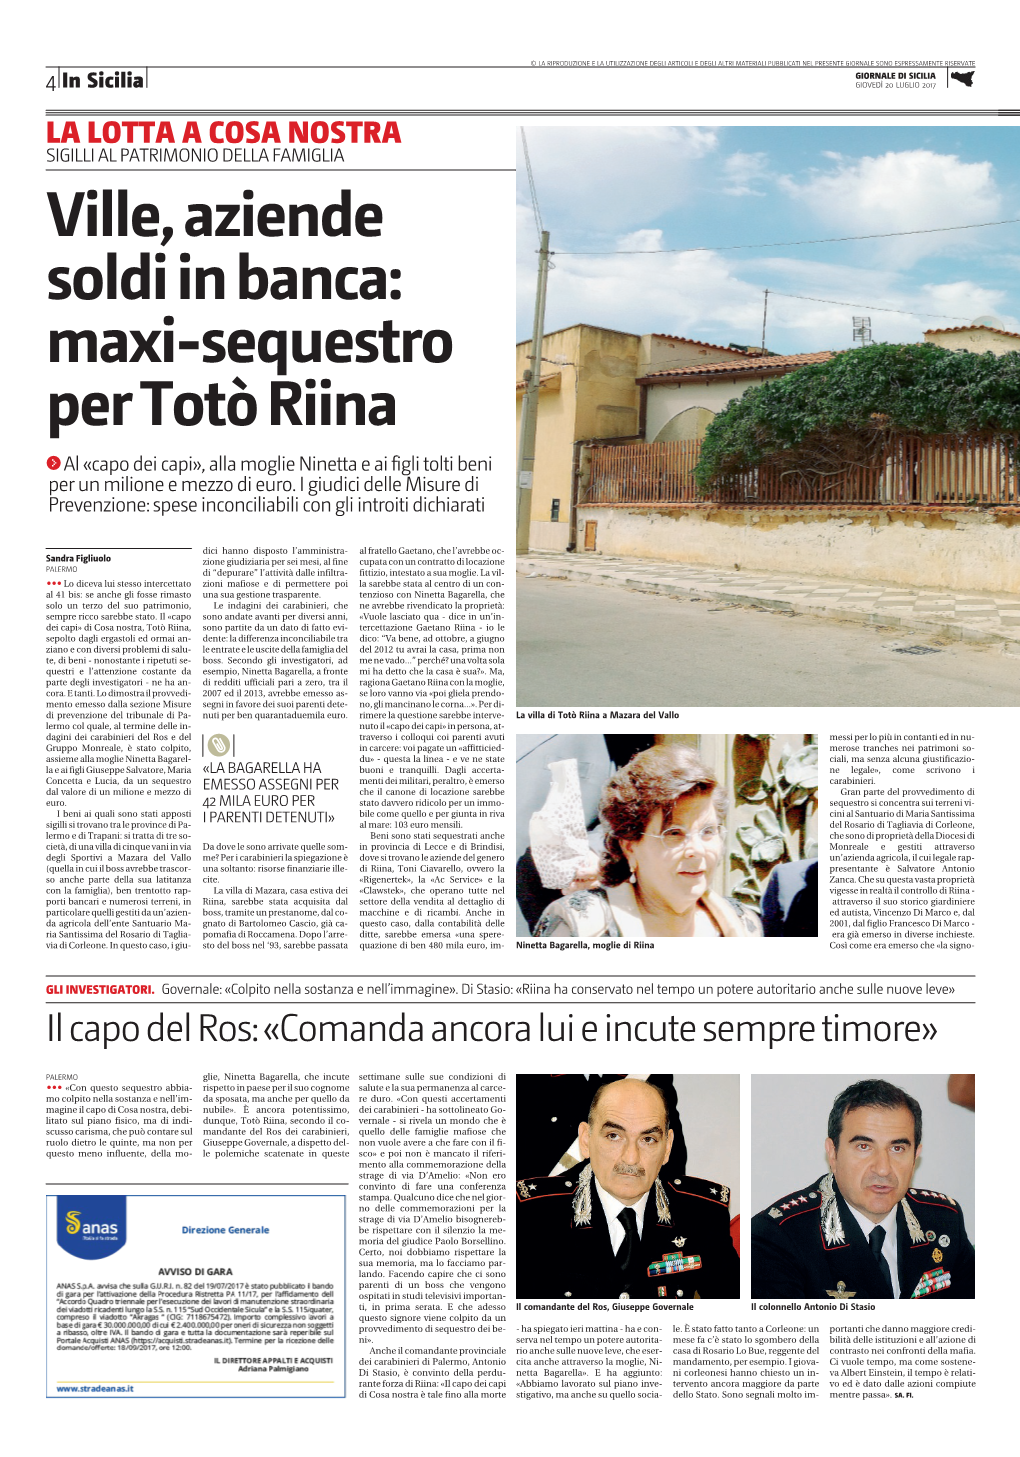 Maxi-Sequestro Per Totò Riina 0 Al «Capo Dei Capi», Alla Moglie Ninetta E Ai Figli Tolti Beni Per Un Milione E Mezzo Di Euro